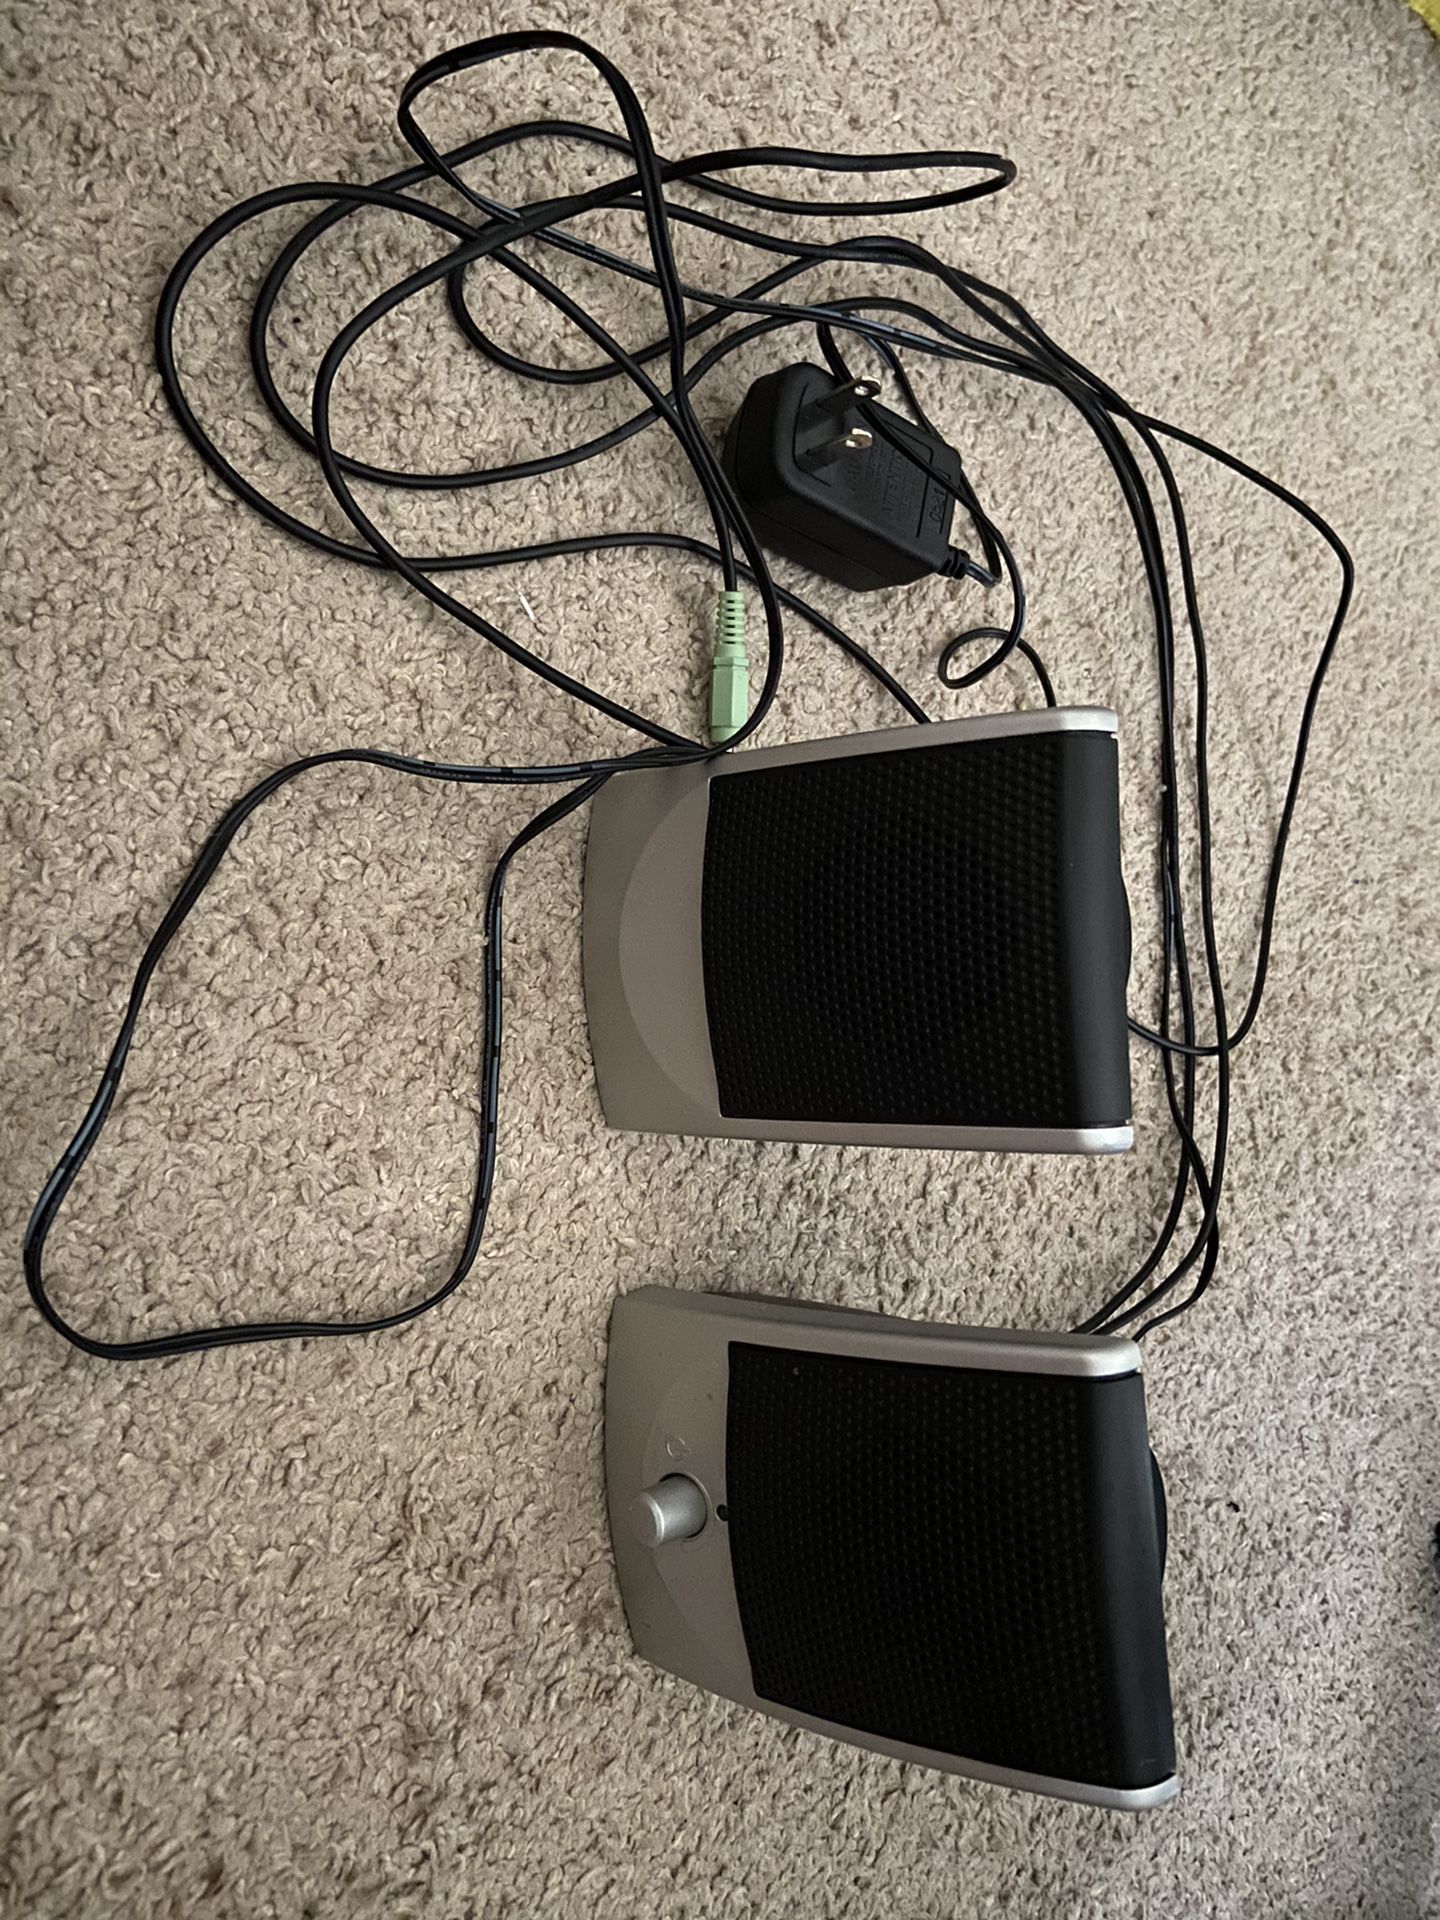 Speakers for desktop computer